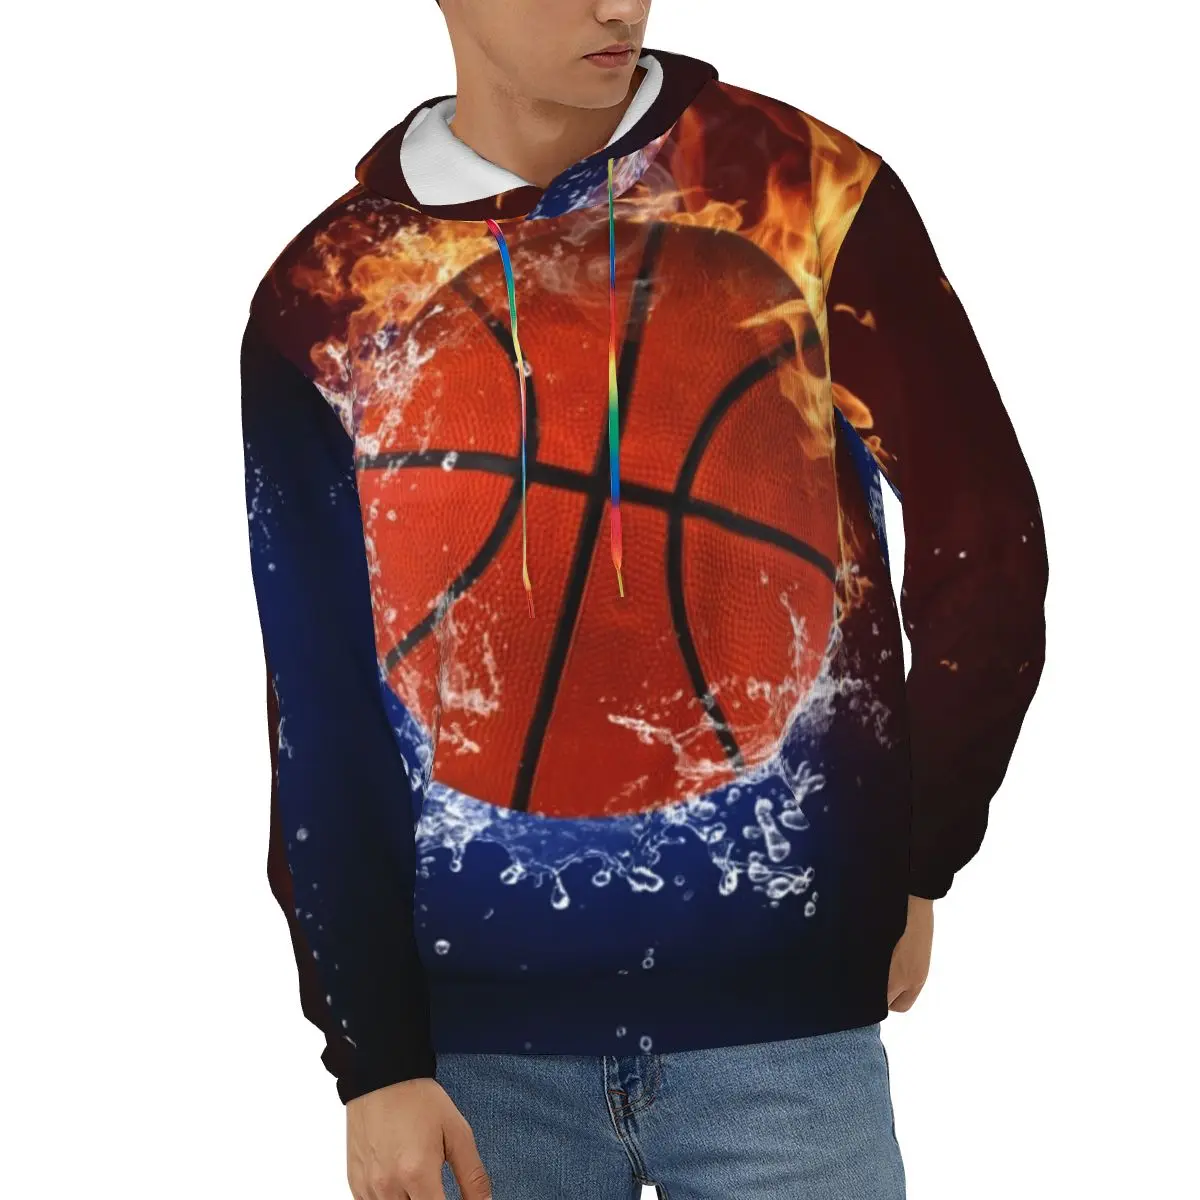 

Мужская толстовка с Баскетбольным мячом в Огненном пламени, повседневные толстовки с длинным рукавом, кофта для мальчиков на осень и весну